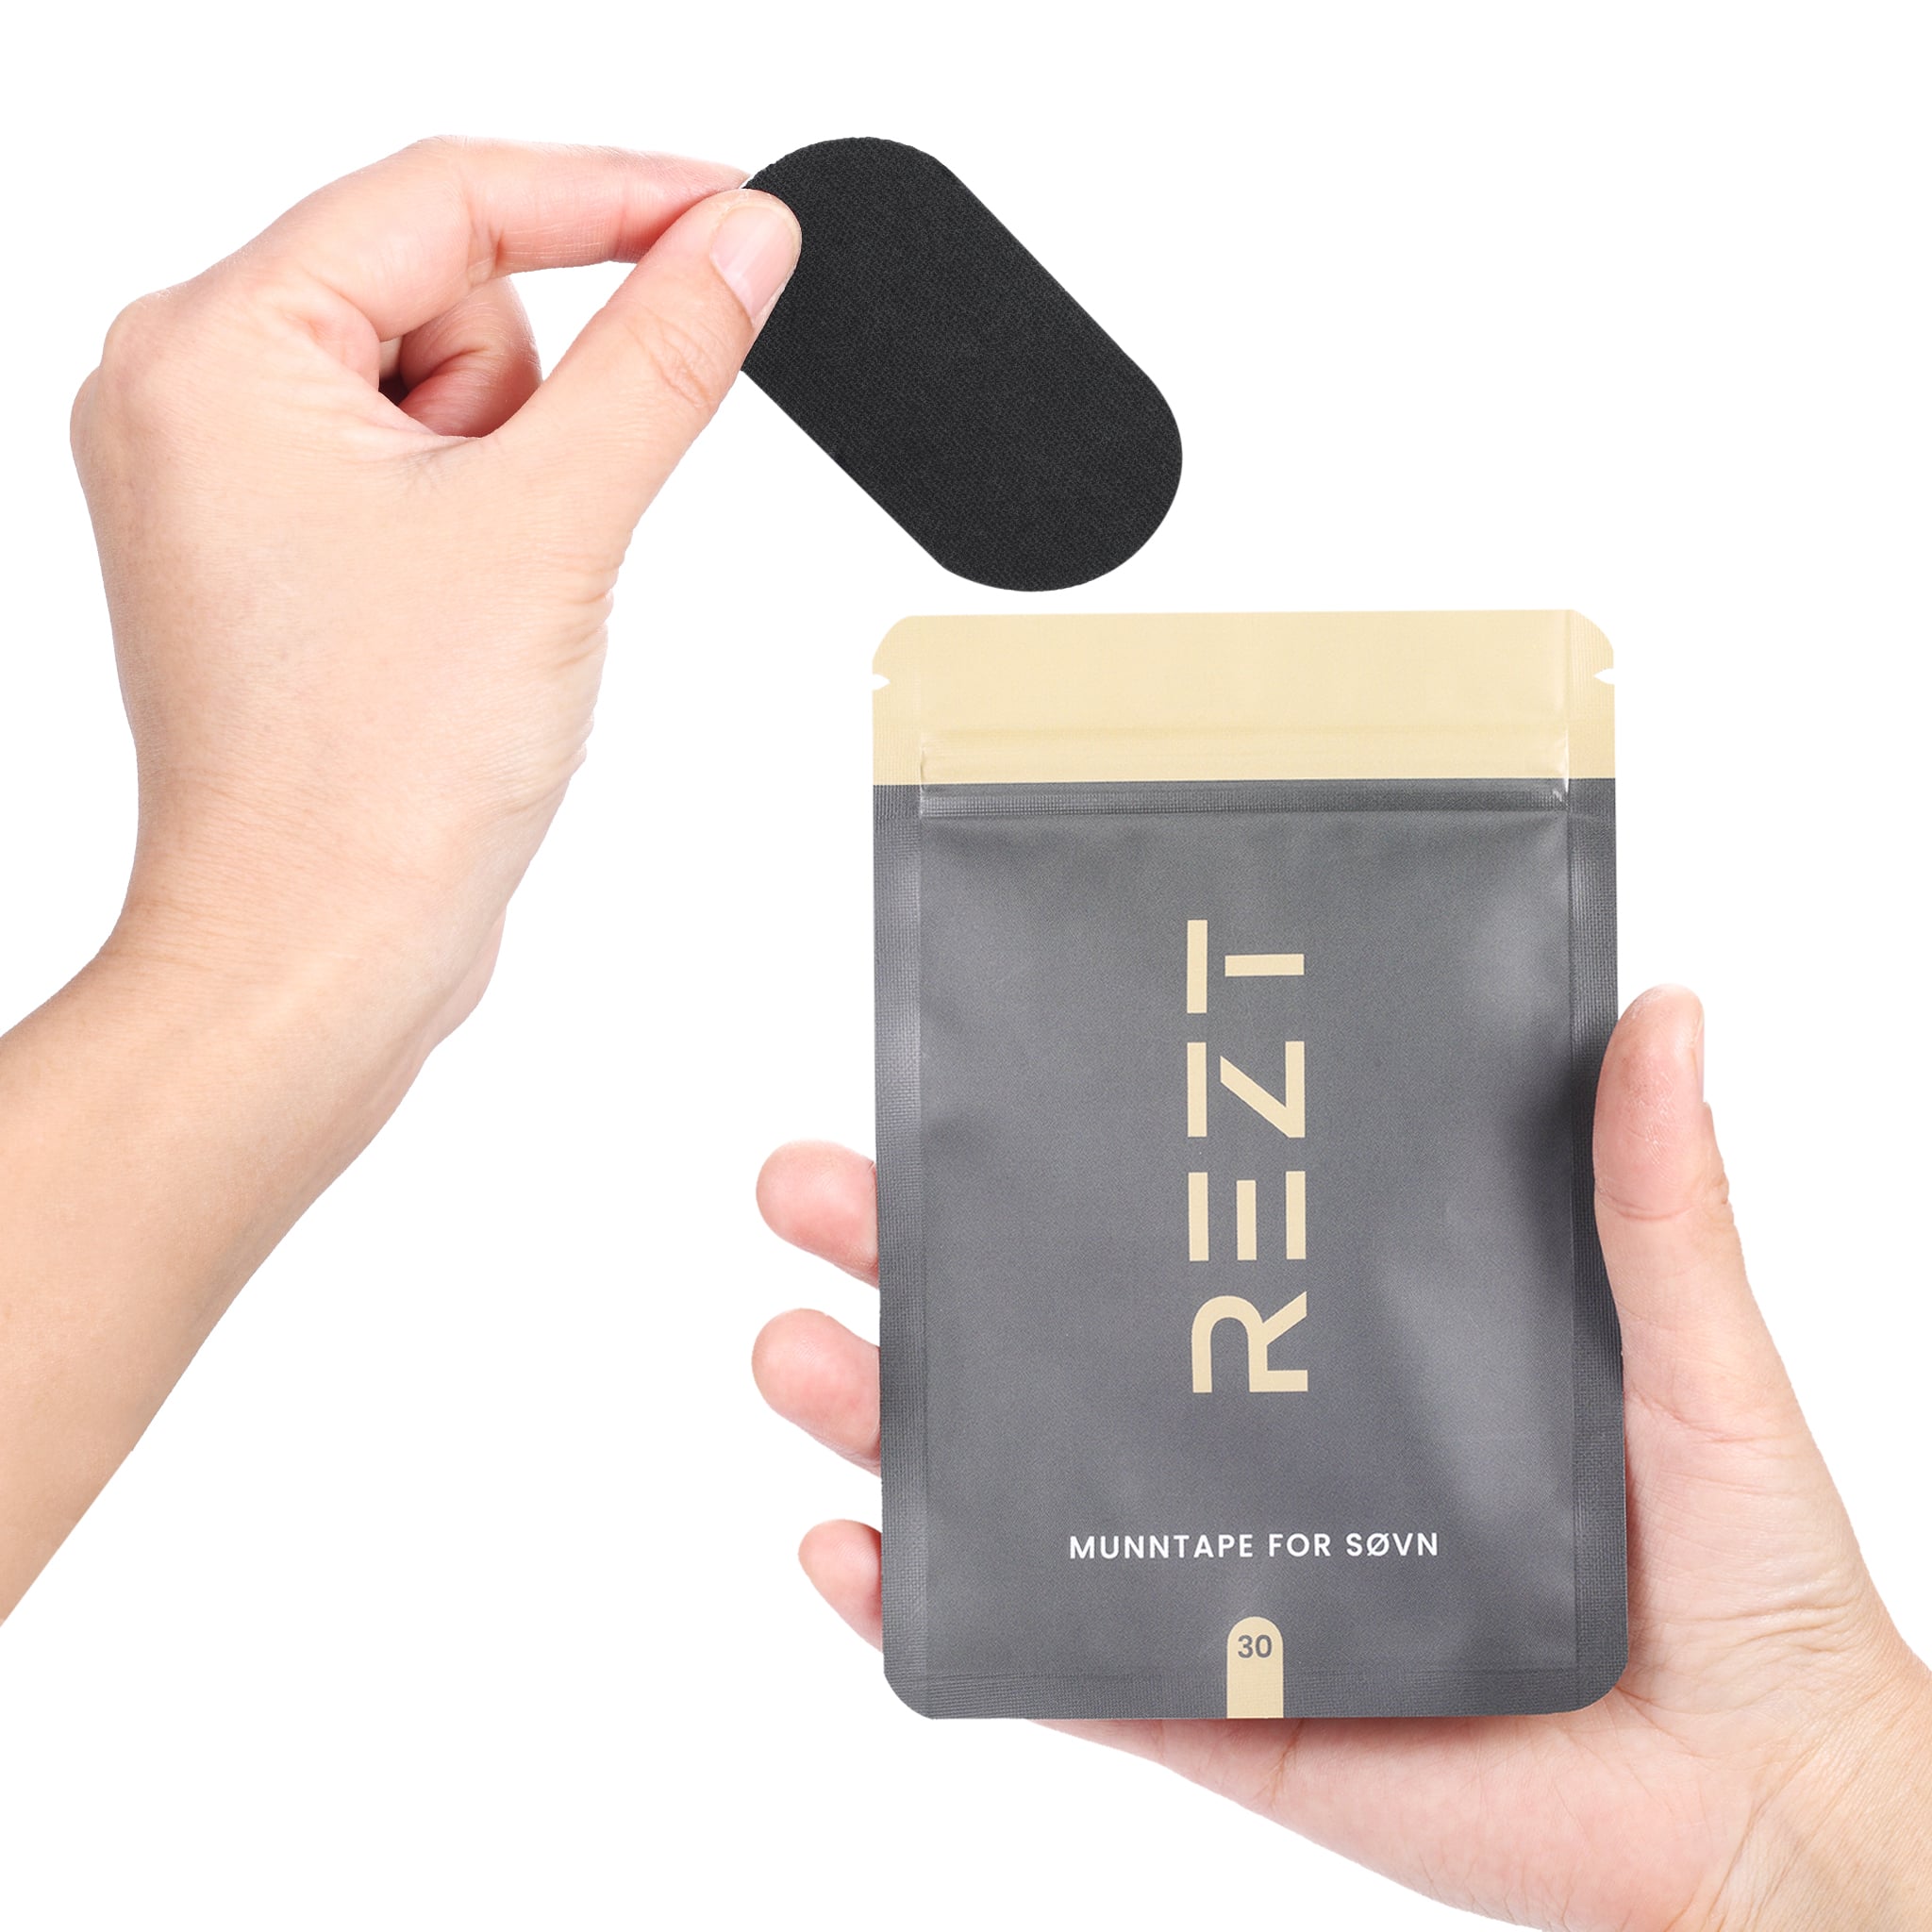 REZT muntejp - Hand som håller svart rand med grå och guld-färgad förpackning i bakgrunden.